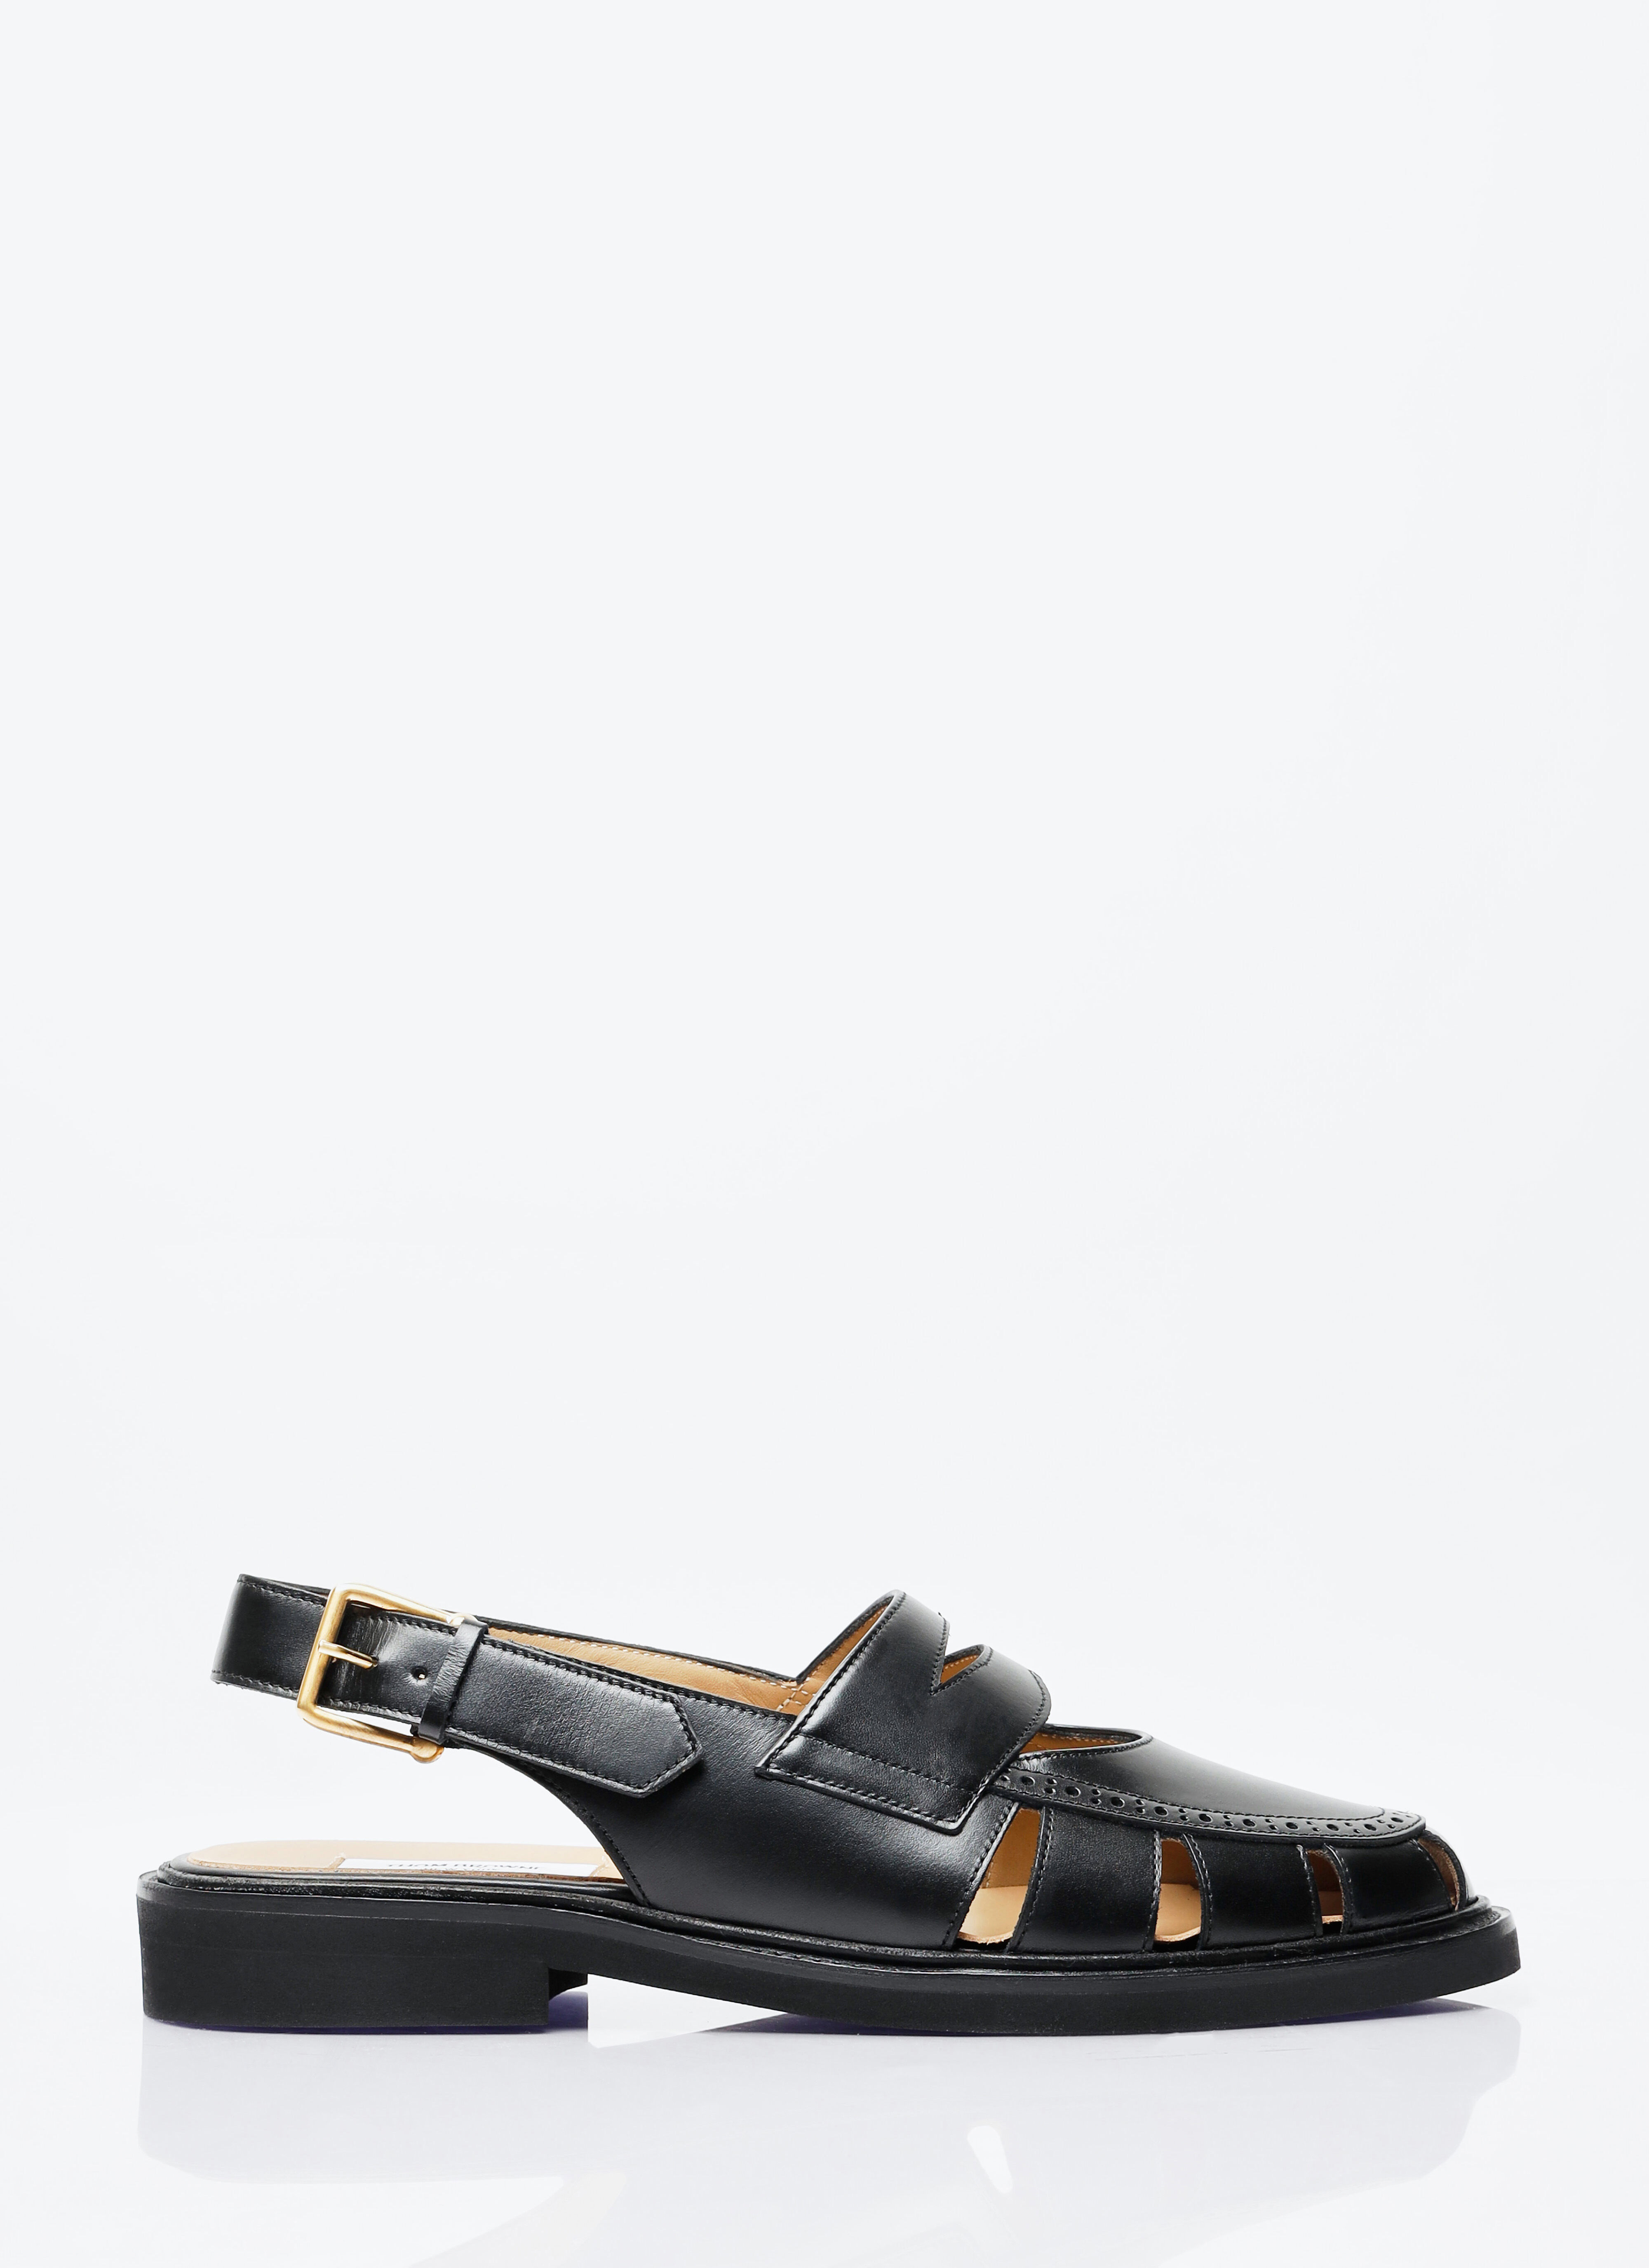 Miu Miu Cut-Out Slingback Loafer Sandals Beige miu0157006